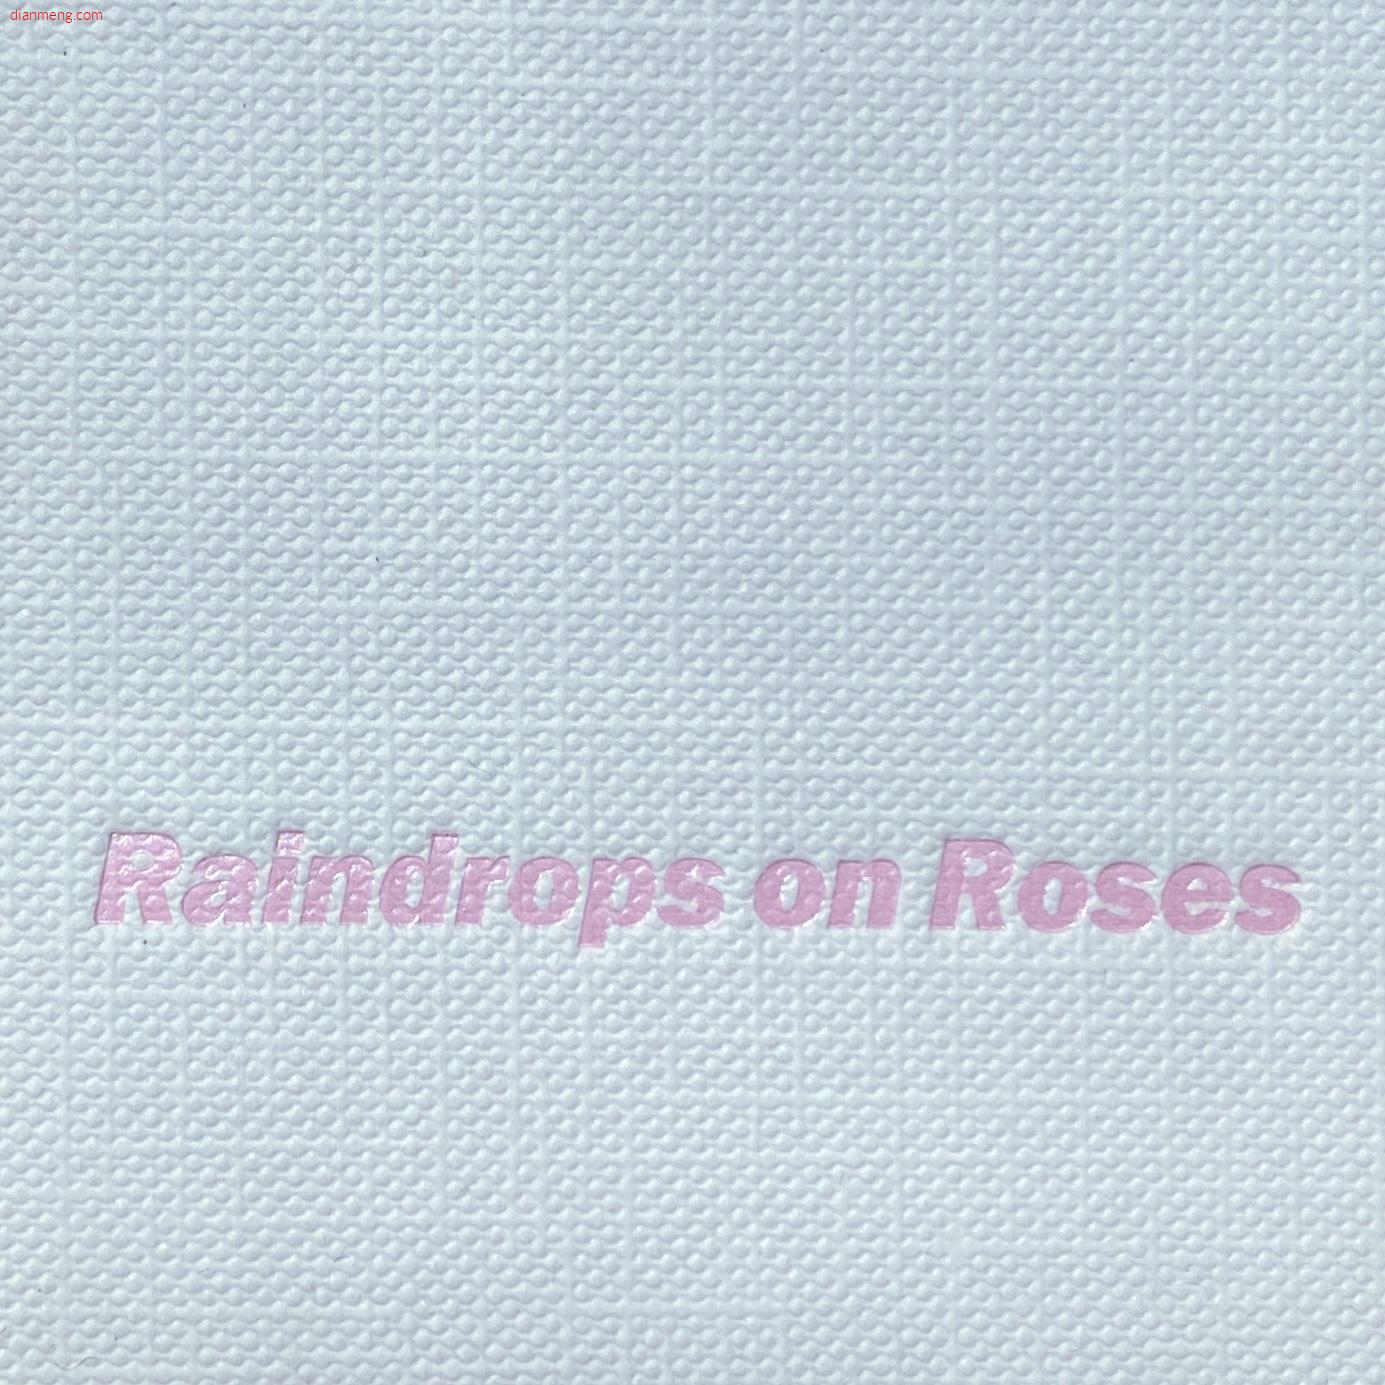 Raindrops on RosesLOGO